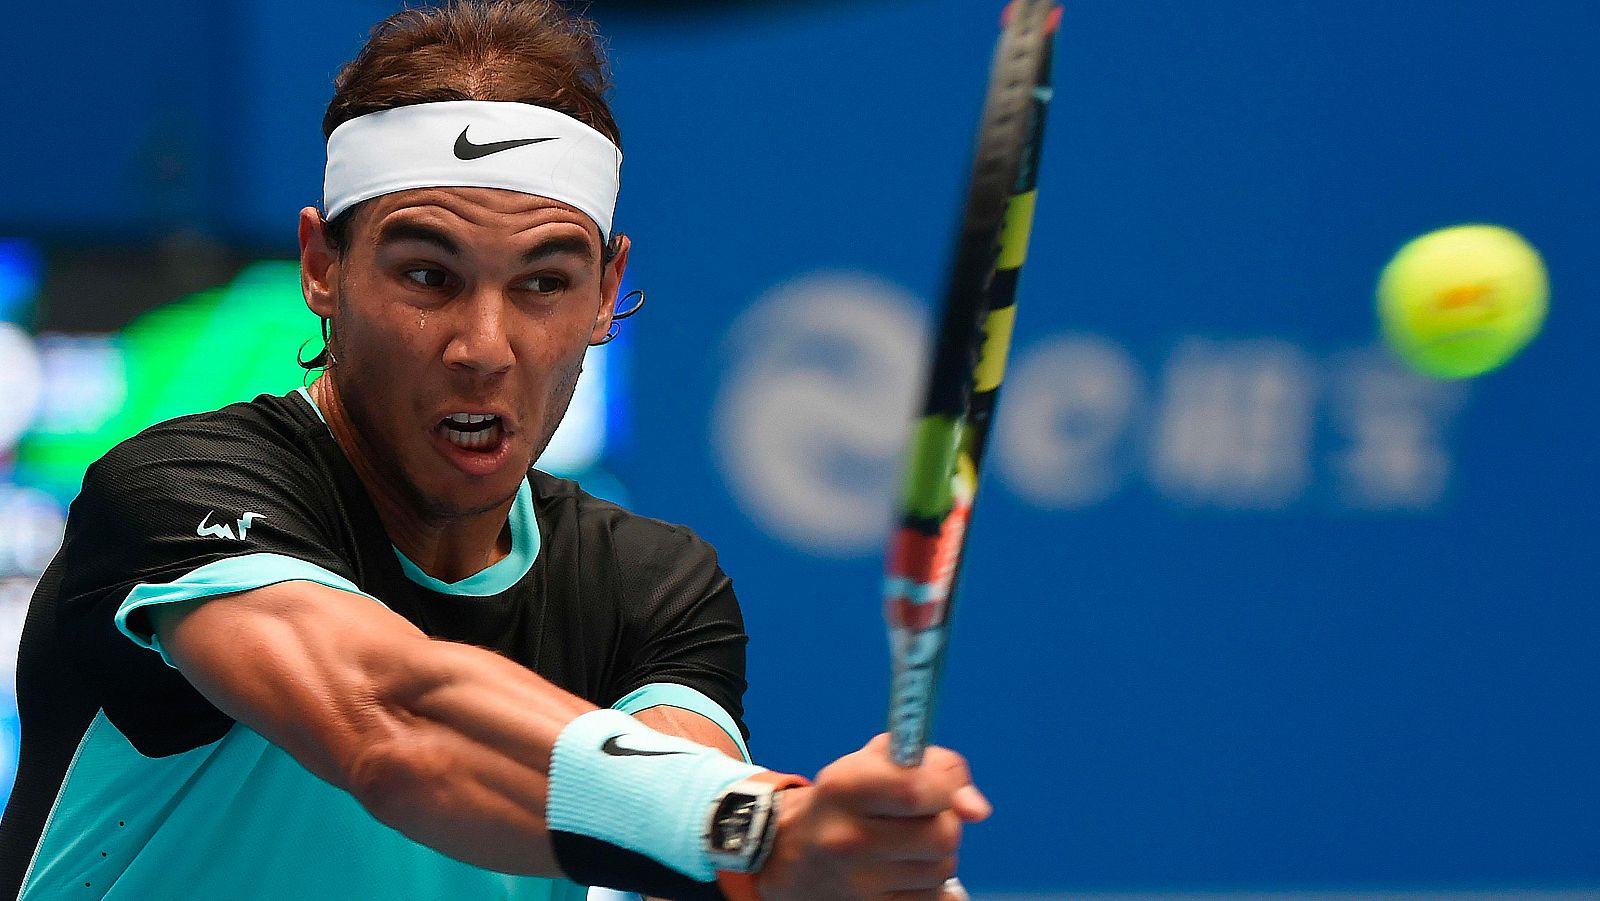 El tenista español Rafa Nadal devuelve una bola ante el chino Wu Di